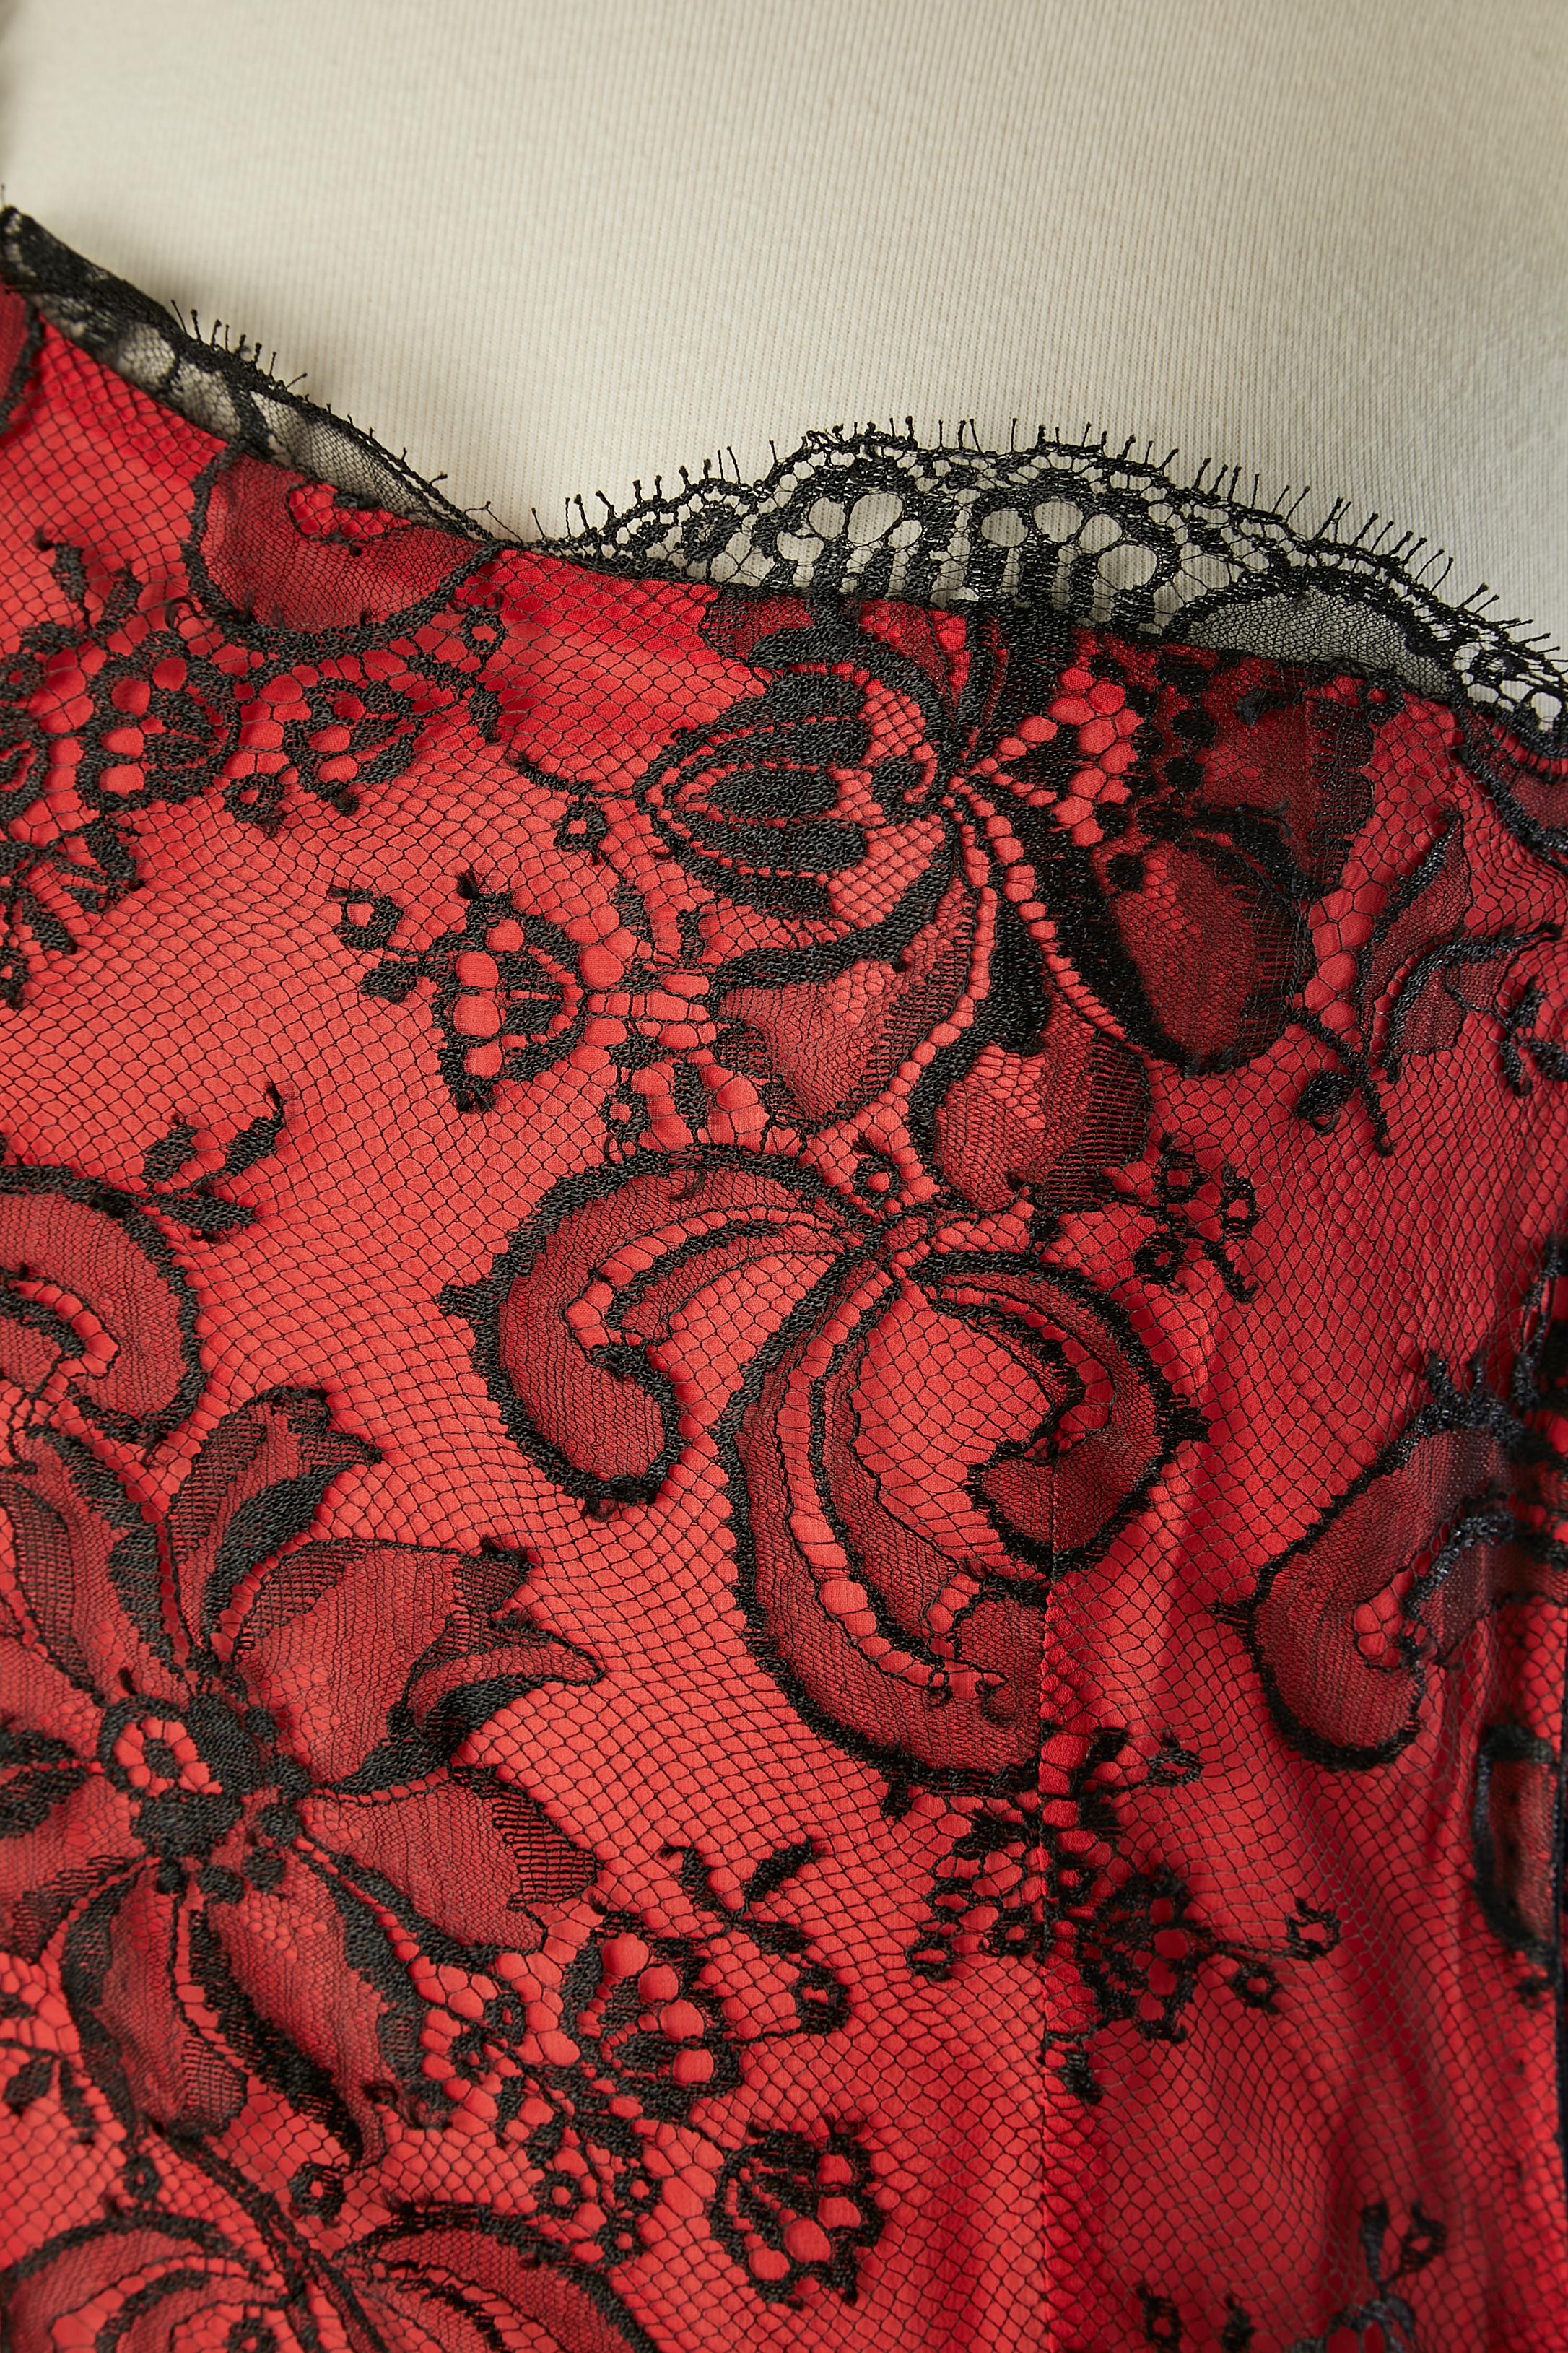 Robe de cocktail asymétrique en soie rouge et noire avec dentelle. Fermeture à glissière sur la gauche et crochets et œillets. Noeud noir en soie sur l'épaule droite.
TAILLE S ( 10 écrit sur l'étiquette mais impossible) 
Nom de la robe : Flamenco